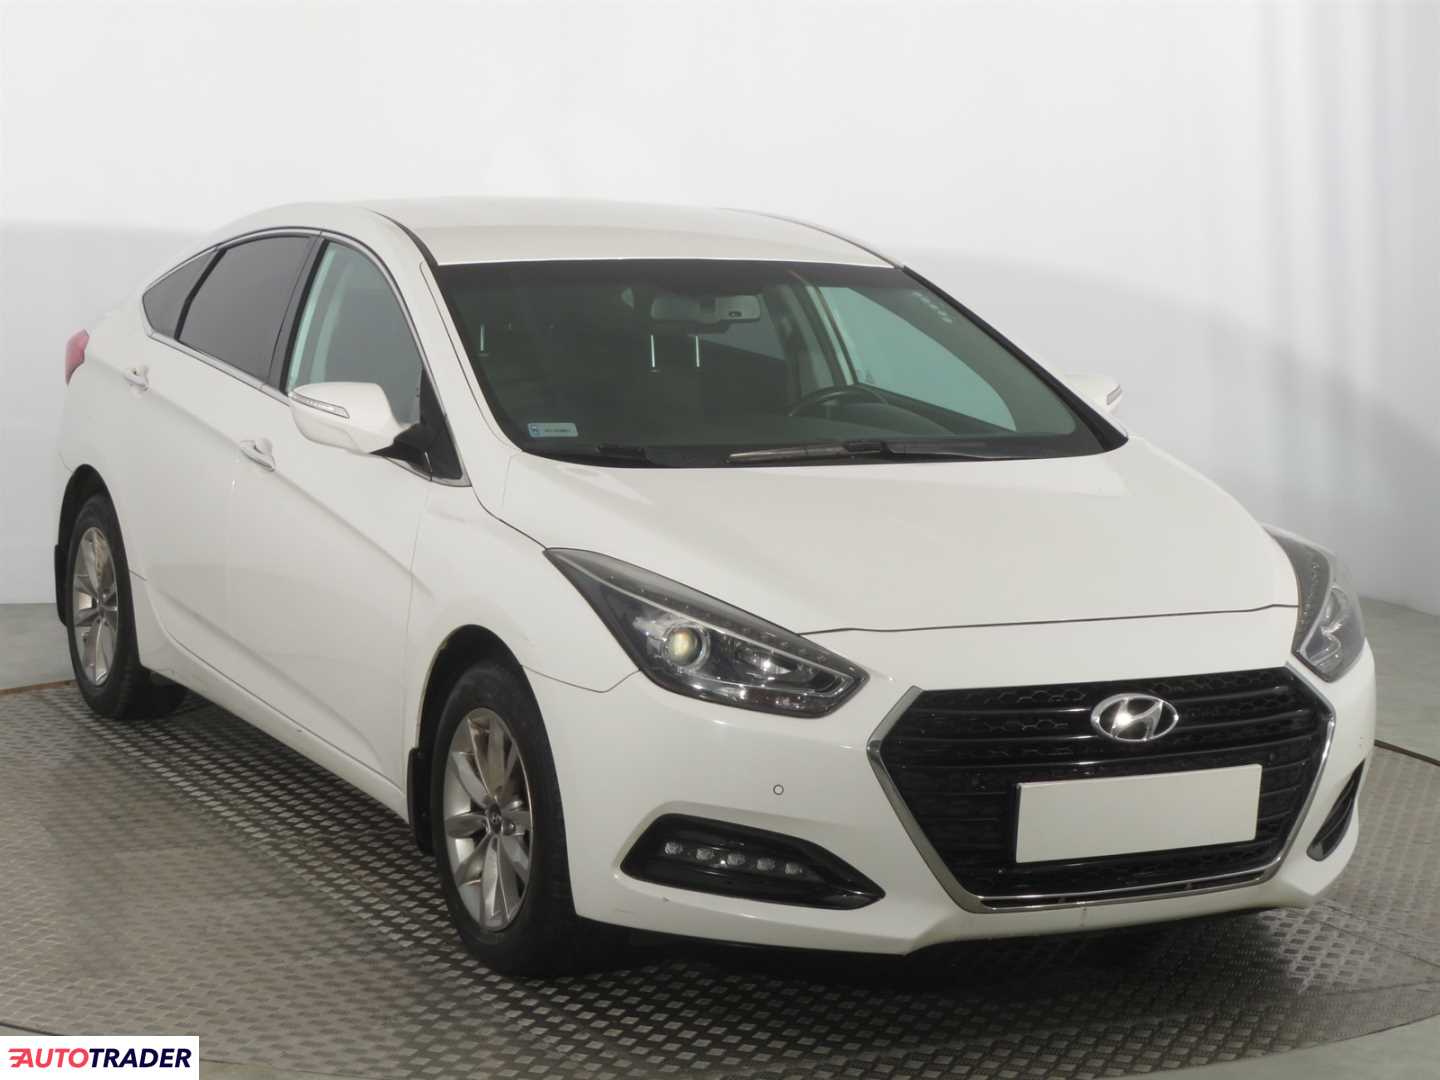 Hyundai i40 2016 1.7 139 KM